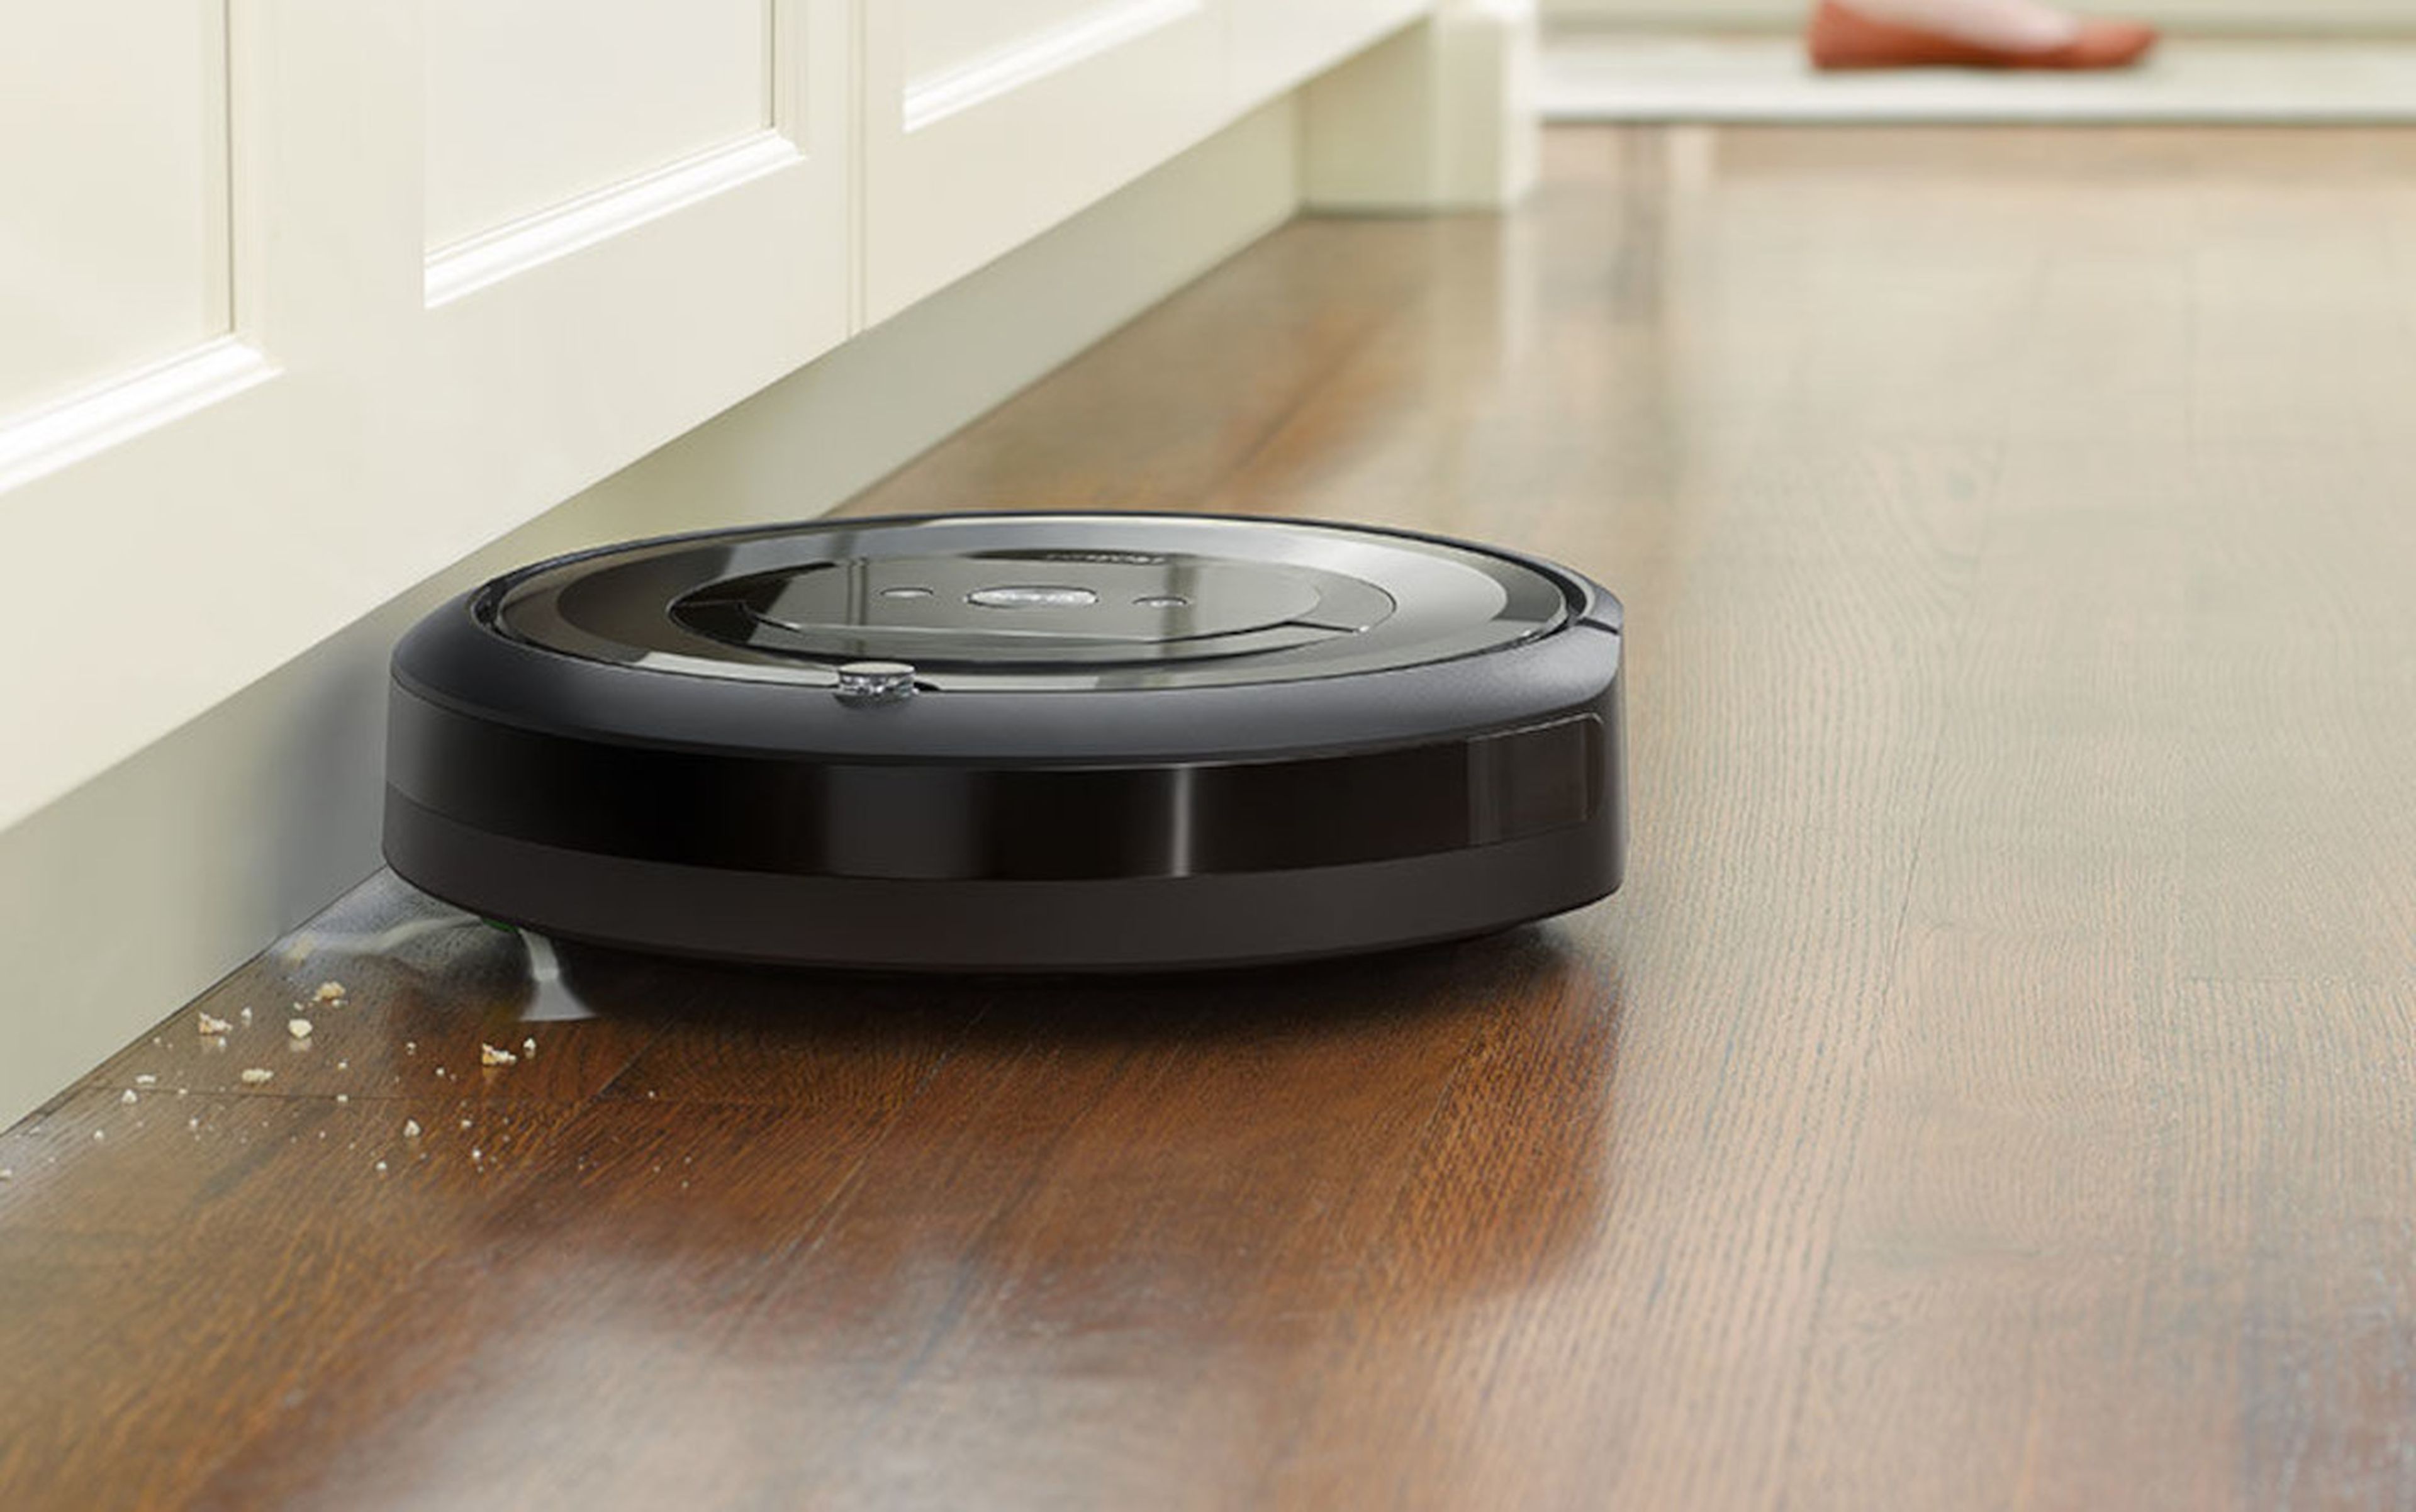 2x1 en robots de limpieza: si compras esta Roomba, te llevas un robot  friegasuelos de 200€ de regalo